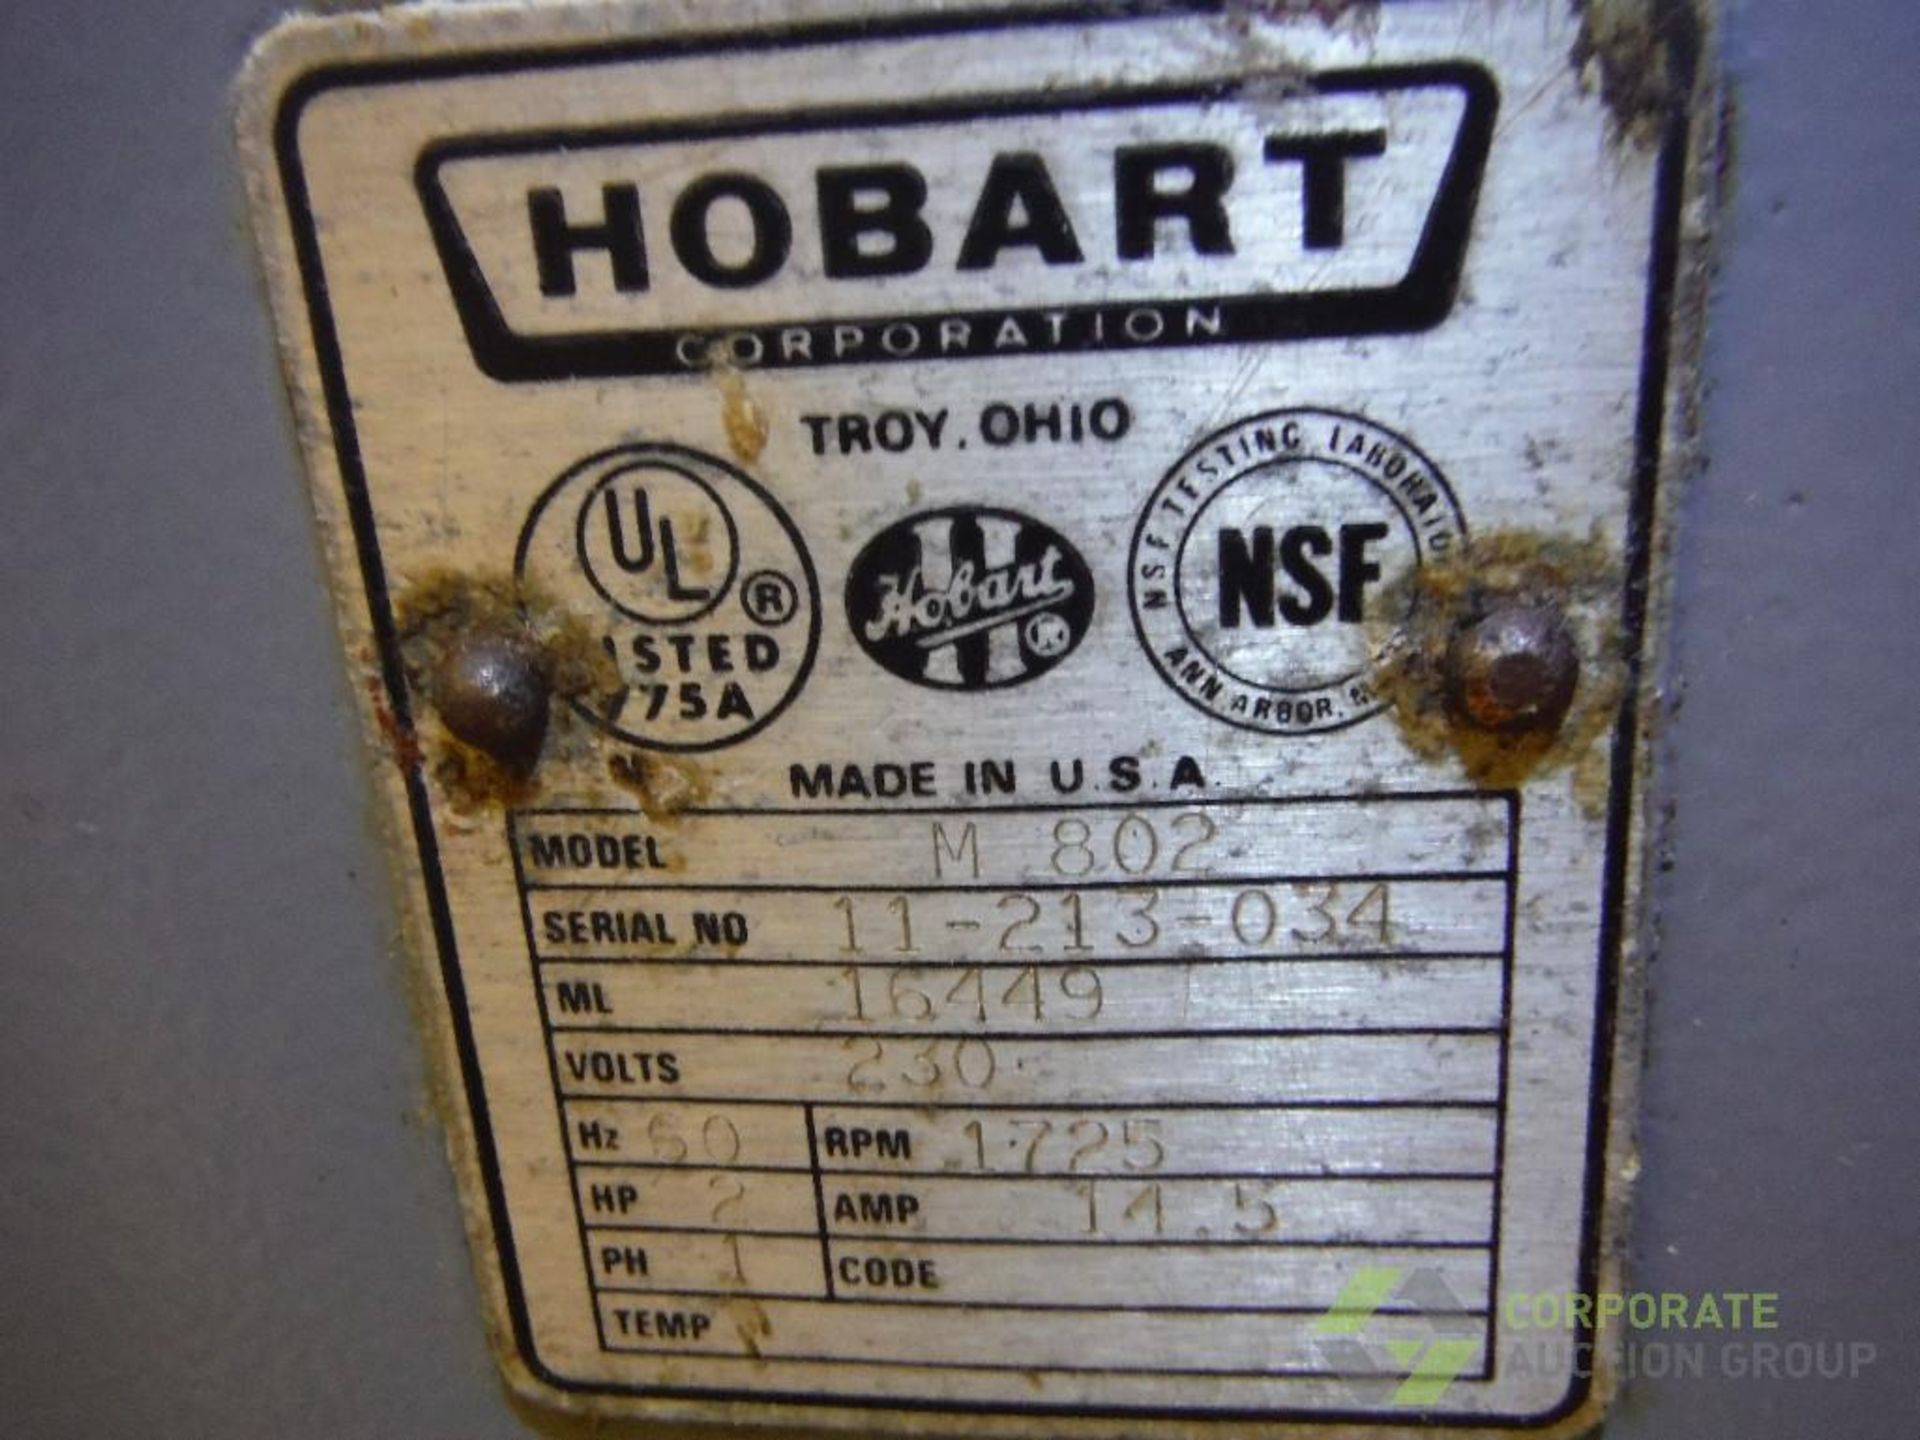 Hobart 80 qt mixer, Model M 802, SN 11-213-034 - Image 6 of 6